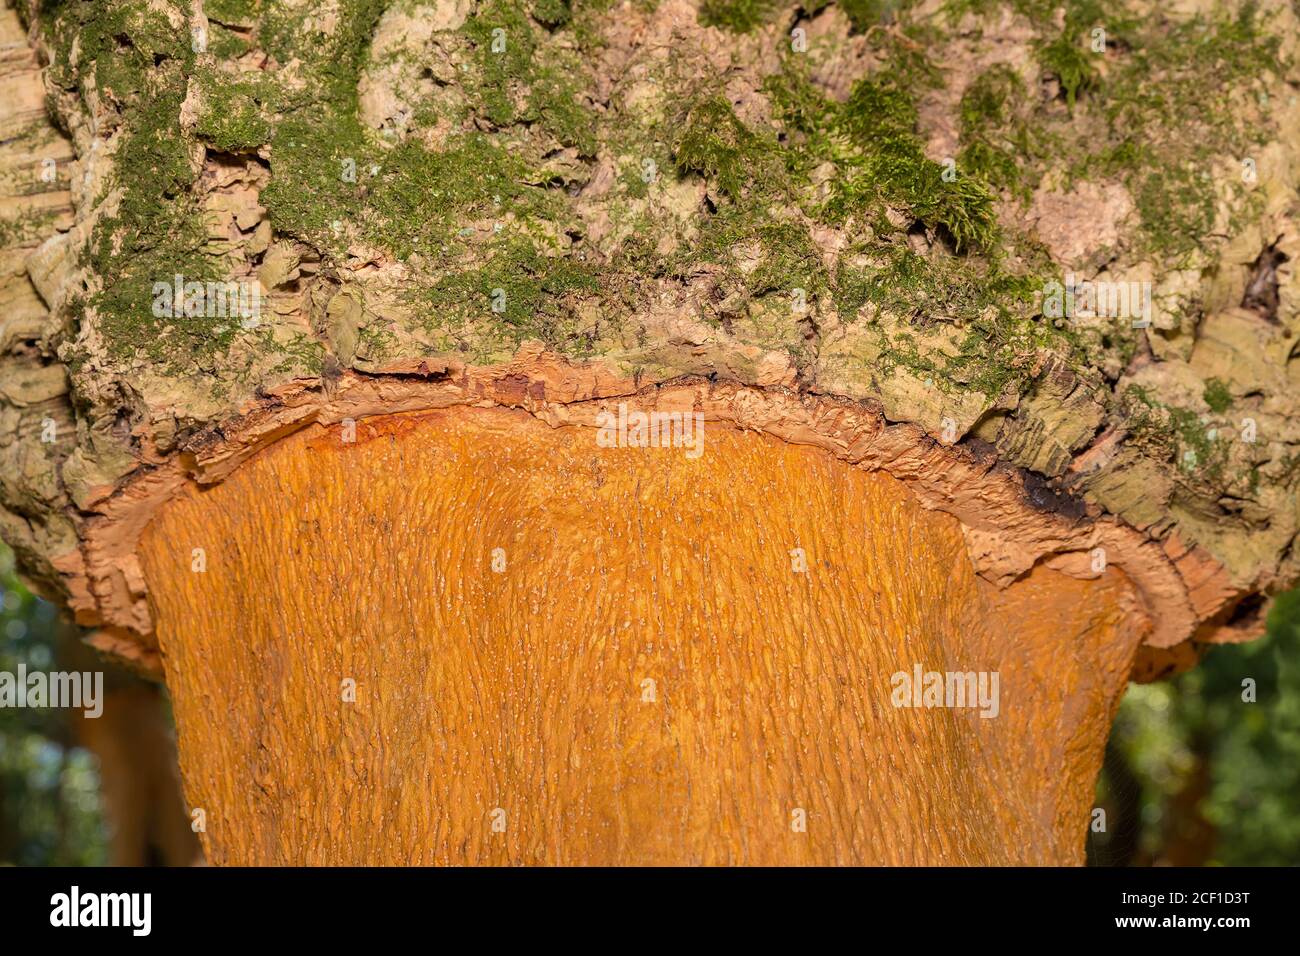 Roble de corcho con capas de corteza de corcho en el tronco en el huerto portugués Foto de stock